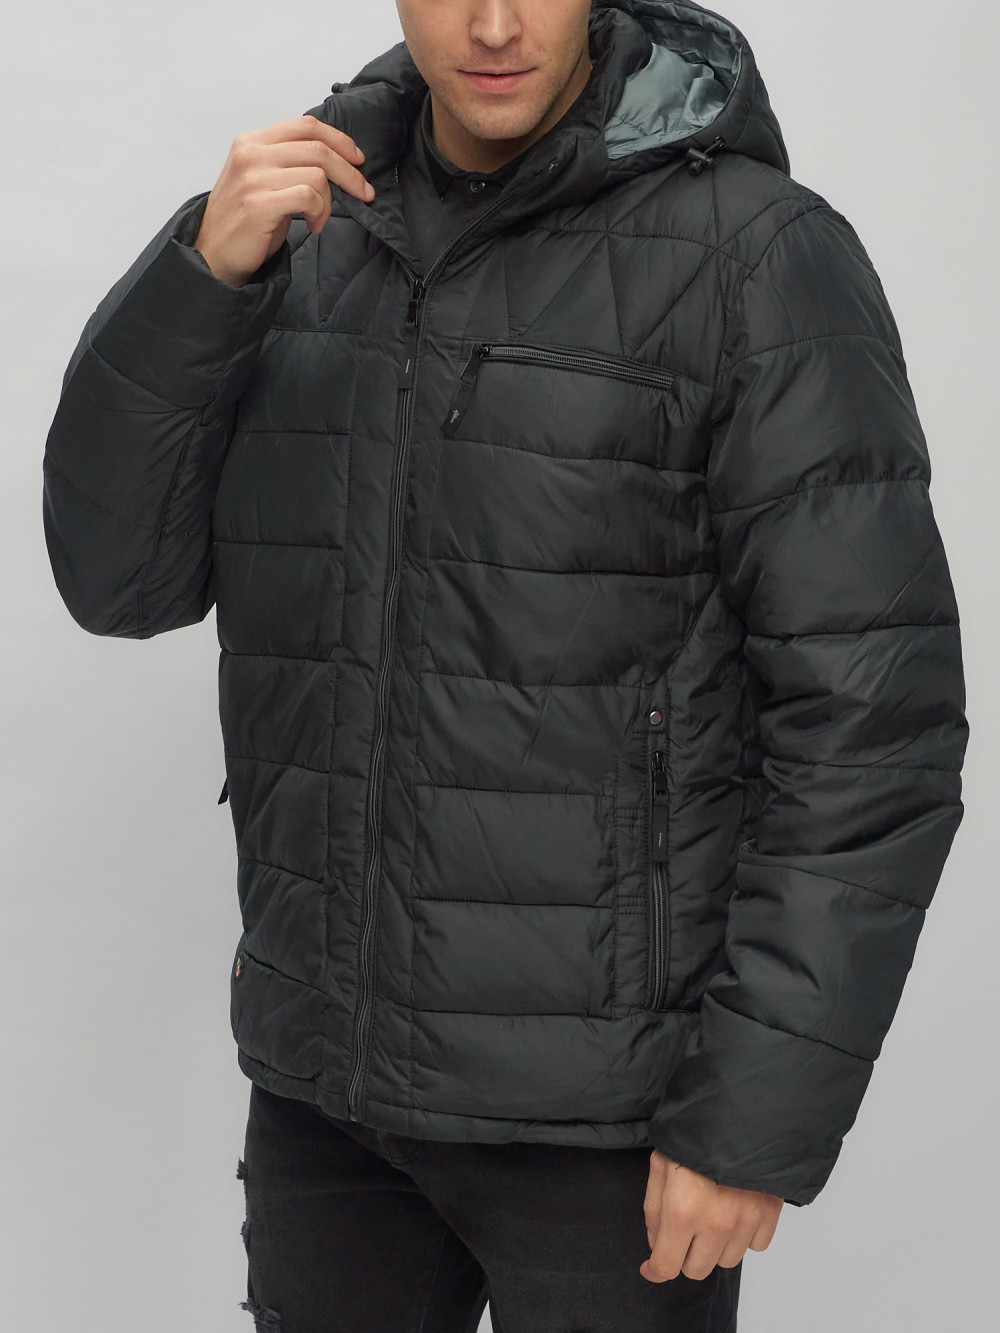 Купить куртку мужскую спортивную весеннюю оптом от производителя недорого в Москве 62187Ch 1